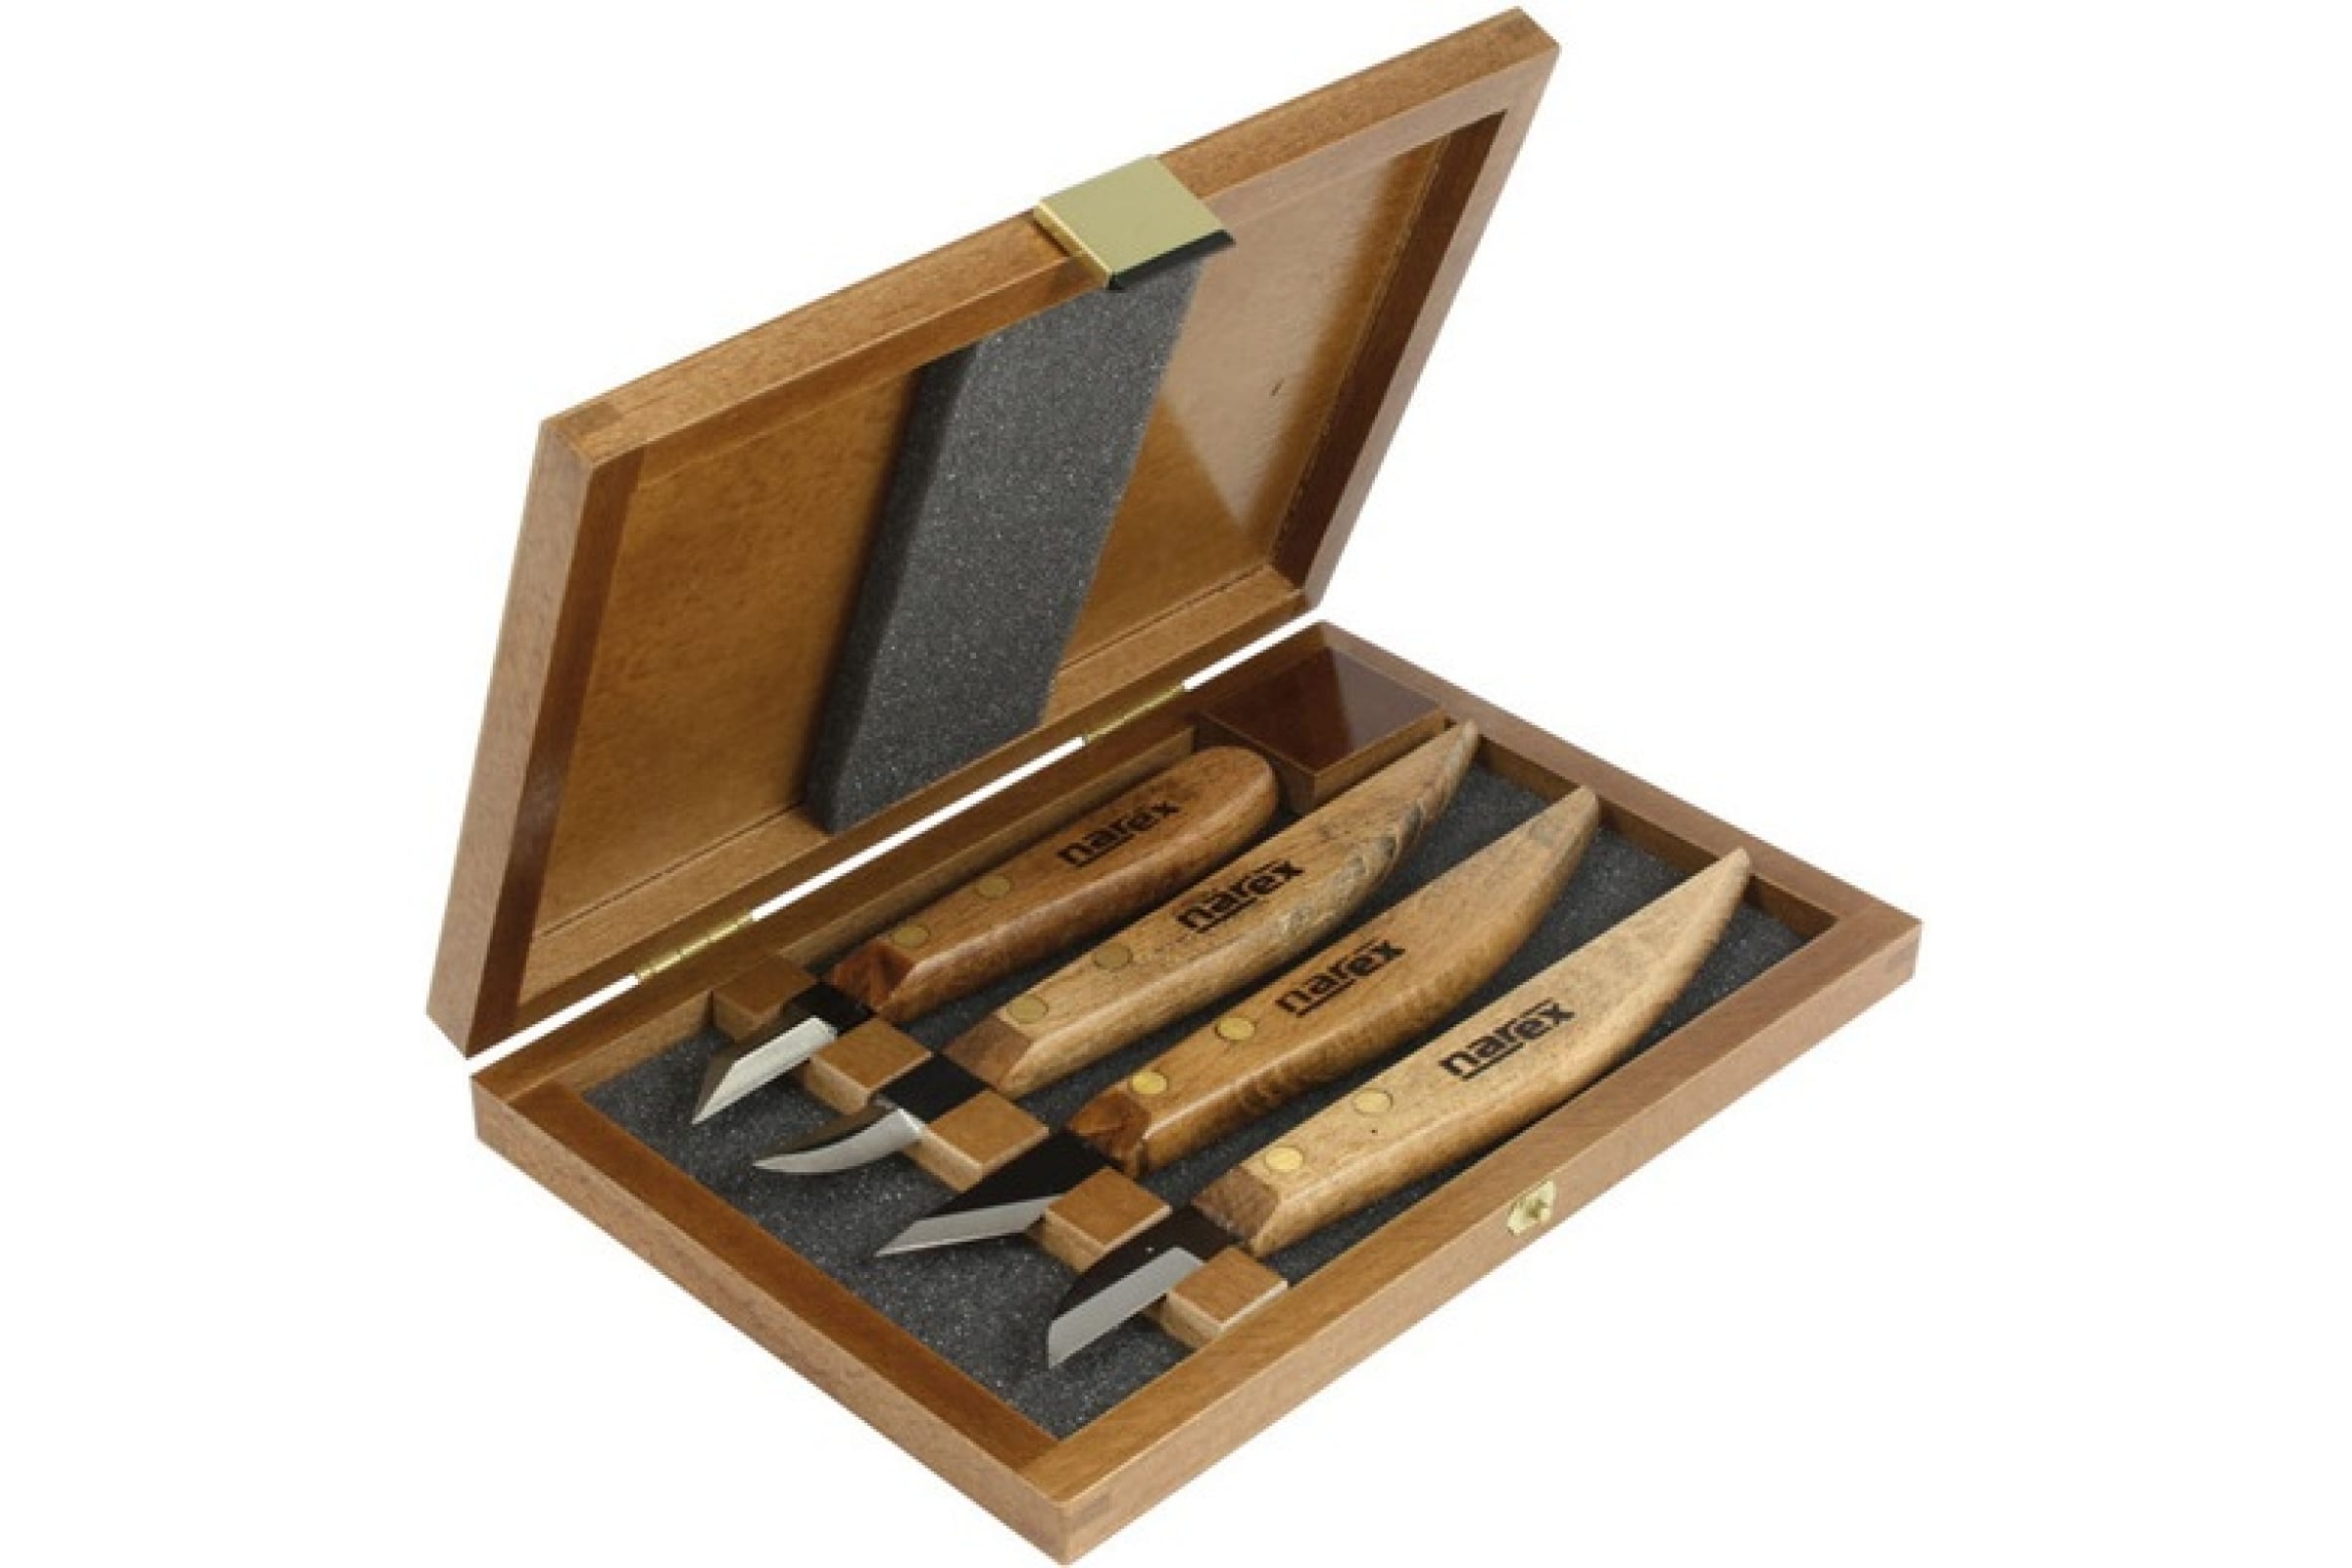 Набор ножей NAREX Profi, арт. 869100 в деревянной коробке, 4 предмета набор шампуров больших forester в блистере 6 шт с деревянной ручкой